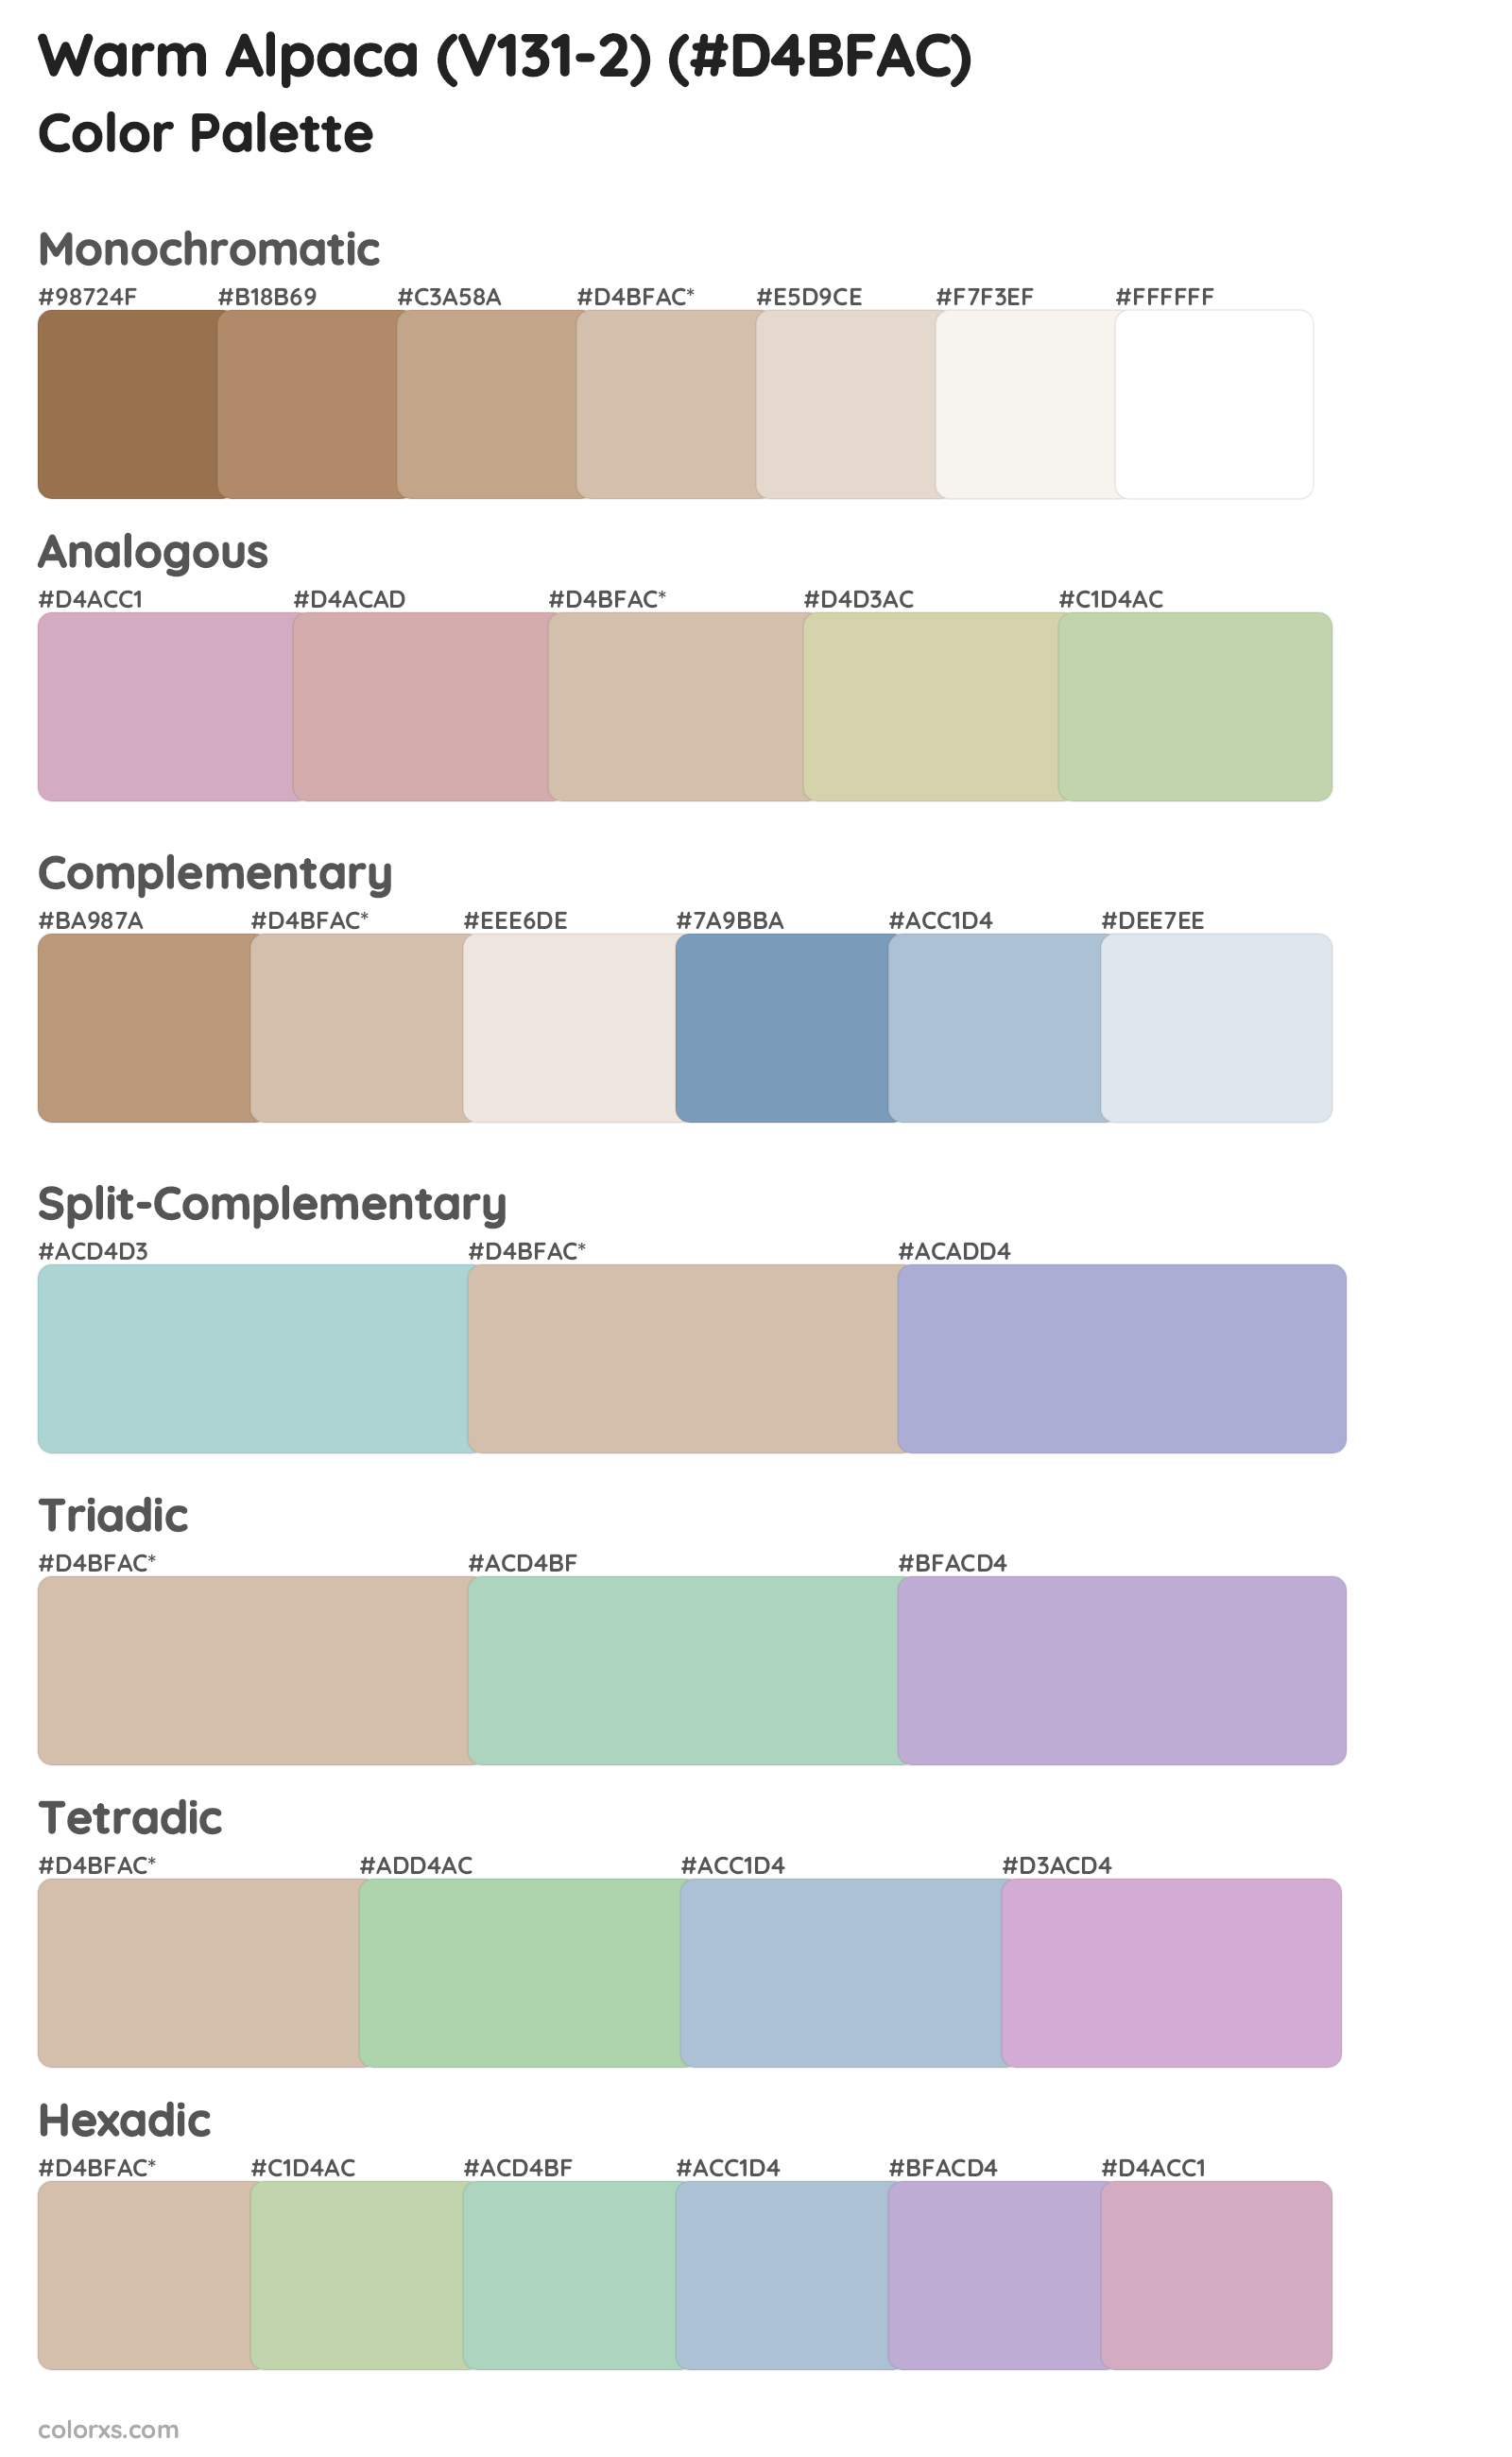 Warm Alpaca (V131-2) Color Scheme Palettes